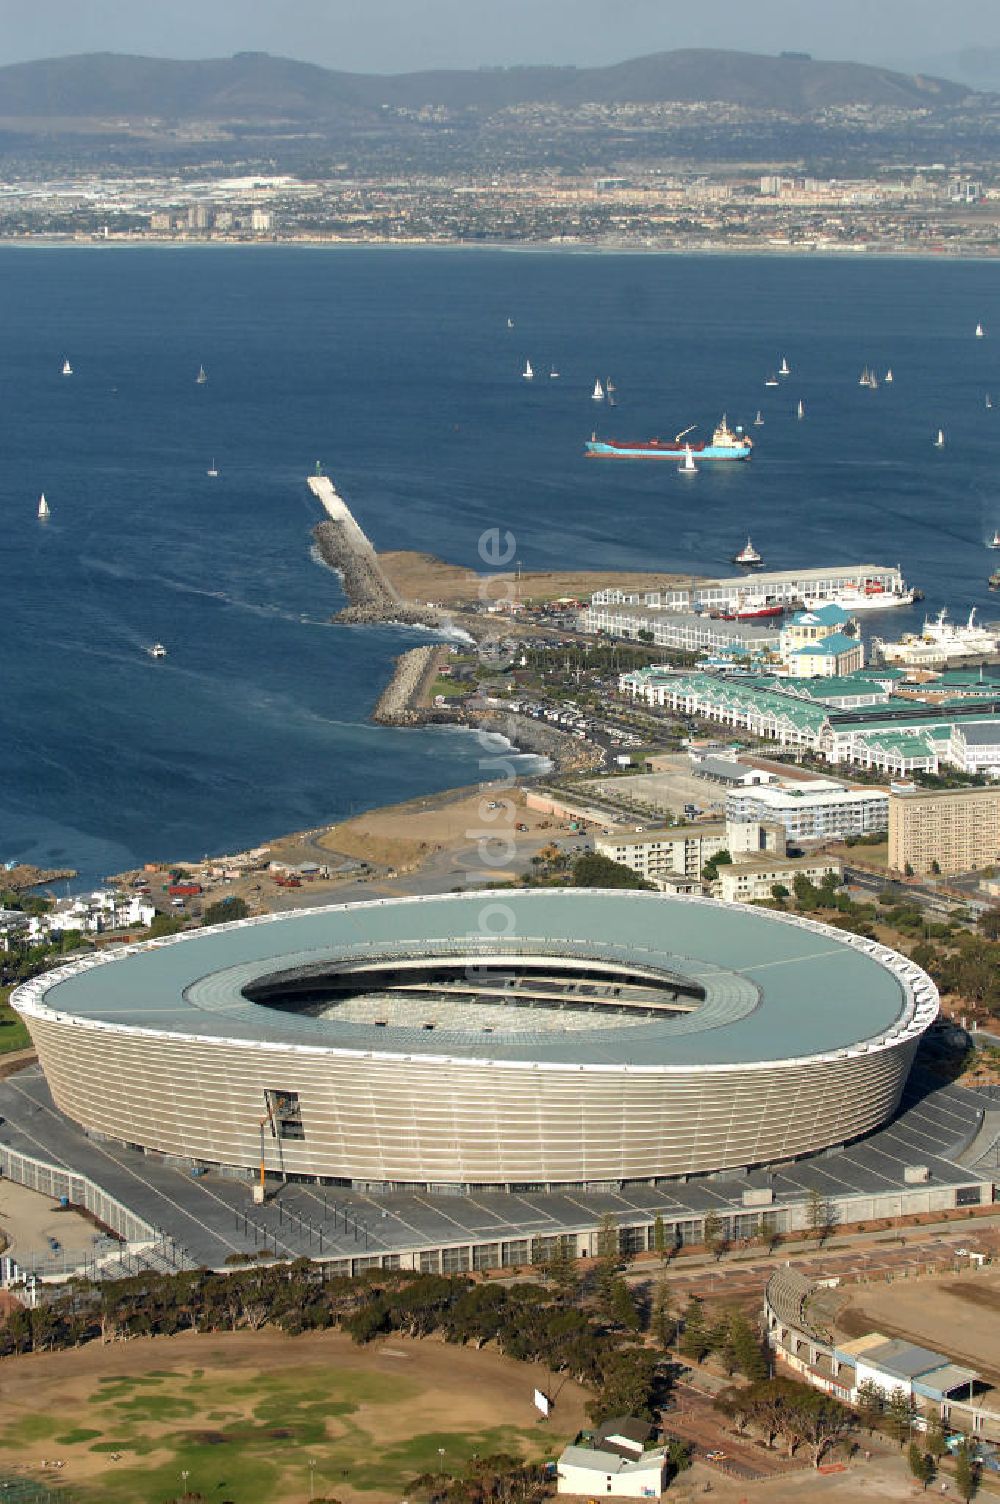 Kapstadt aus der Vogelperspektive: Green Point Stadion / Stadium in Kapstadt / Cape Town in Südafrika / South Africa